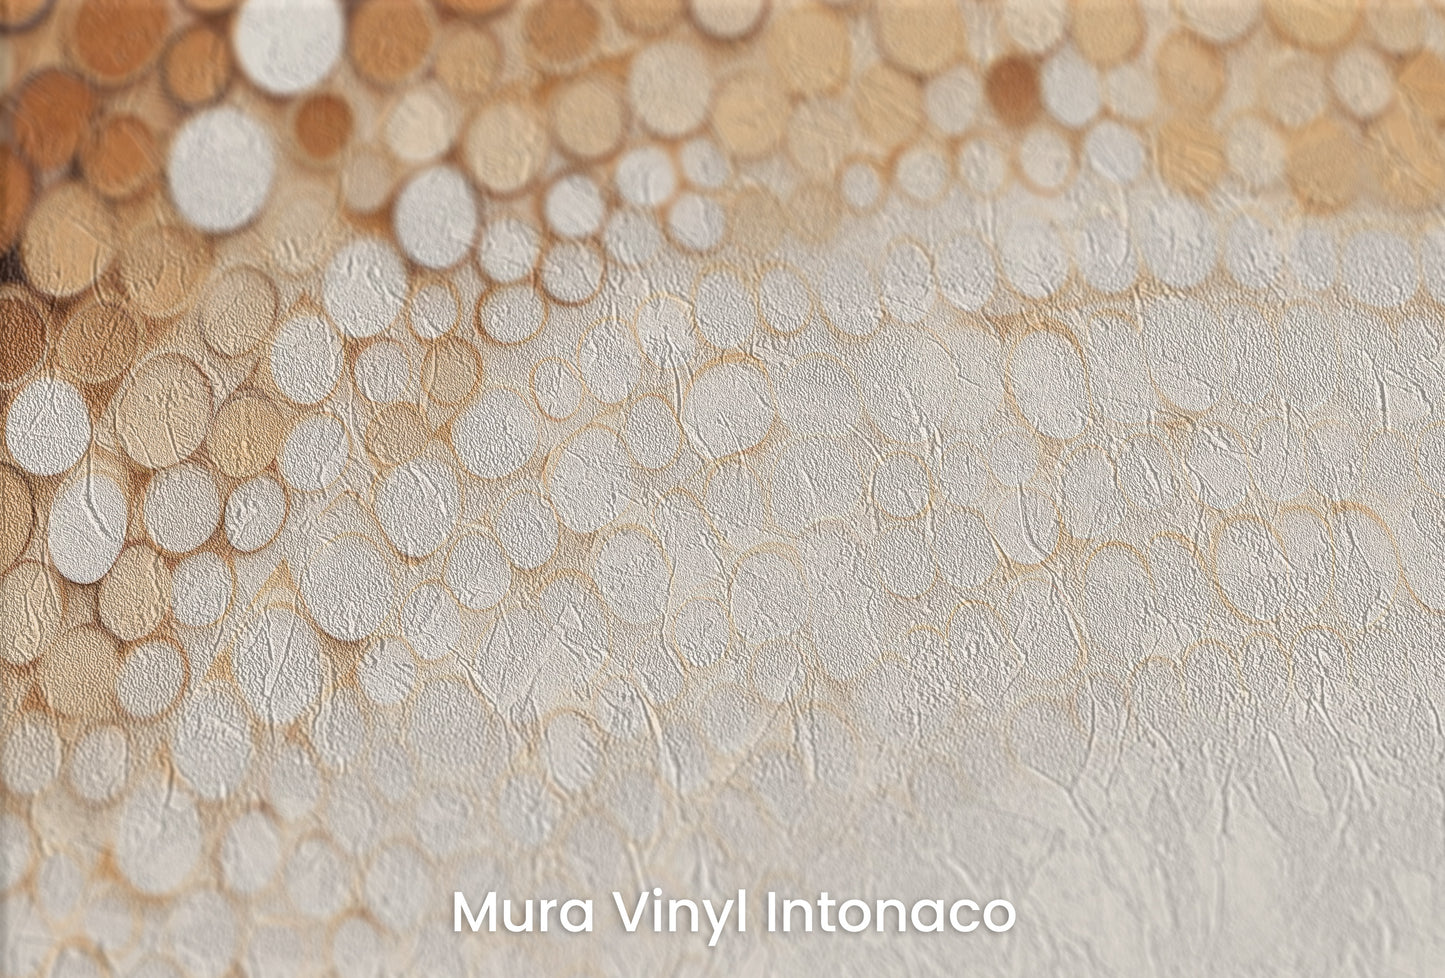 Zbliżenie na artystyczną fototapetę o nazwie RUSTIC COFFEE TONES CASCADE na podłożu Mura Vinyl Intonaco - struktura tartego tynku.